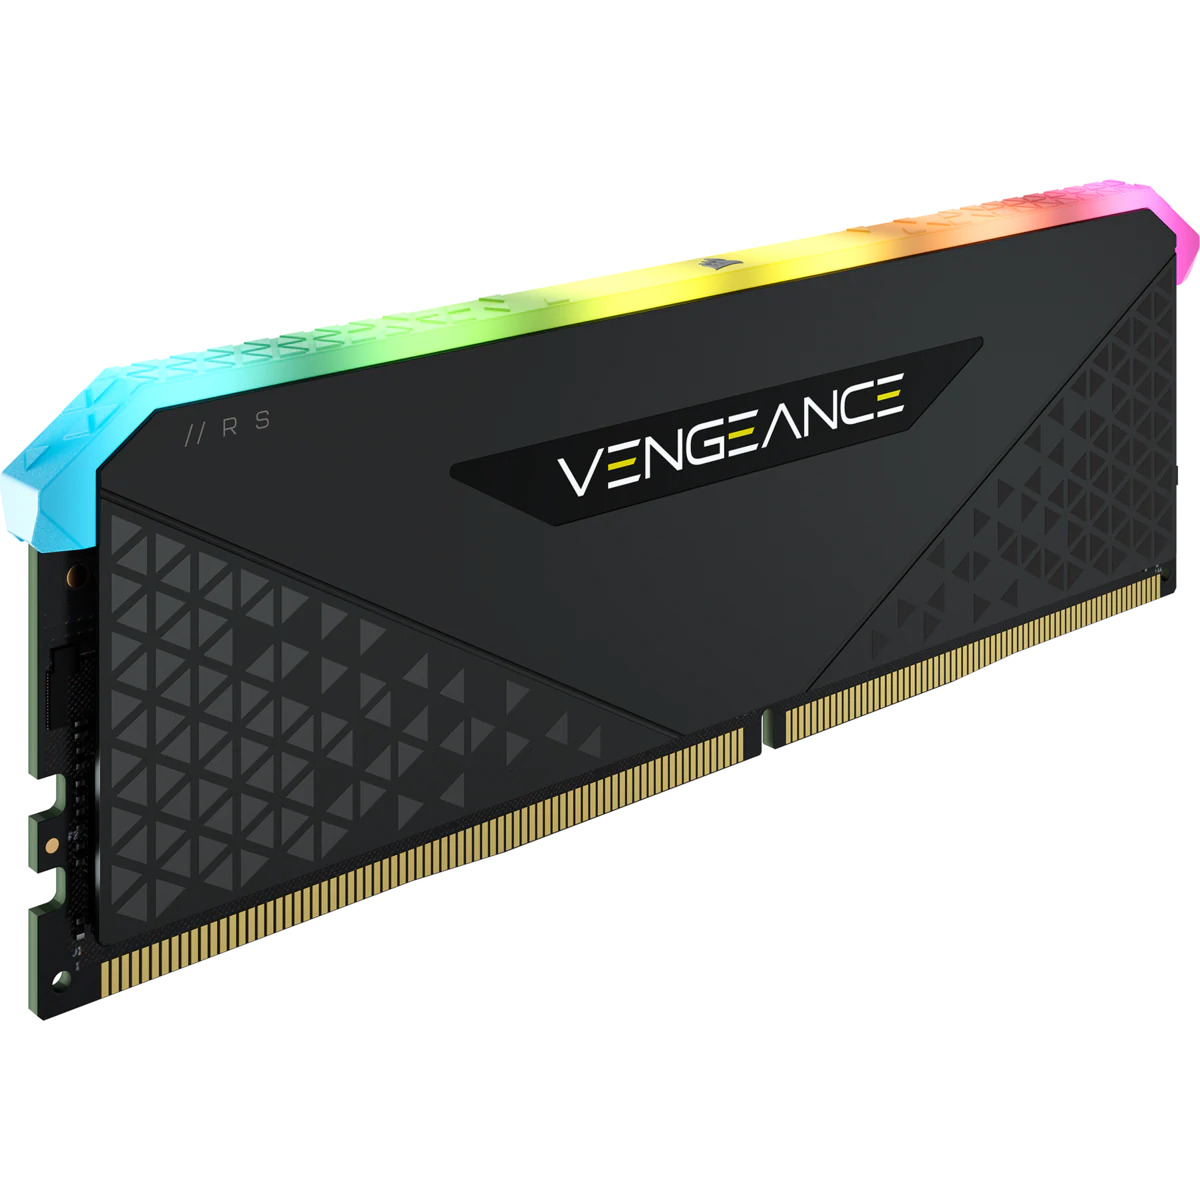 Ram Corsair Vengeance RGB RS 8GB (1x8GB) DDR4 3200MHz - CMG8GX4M1E3200C16